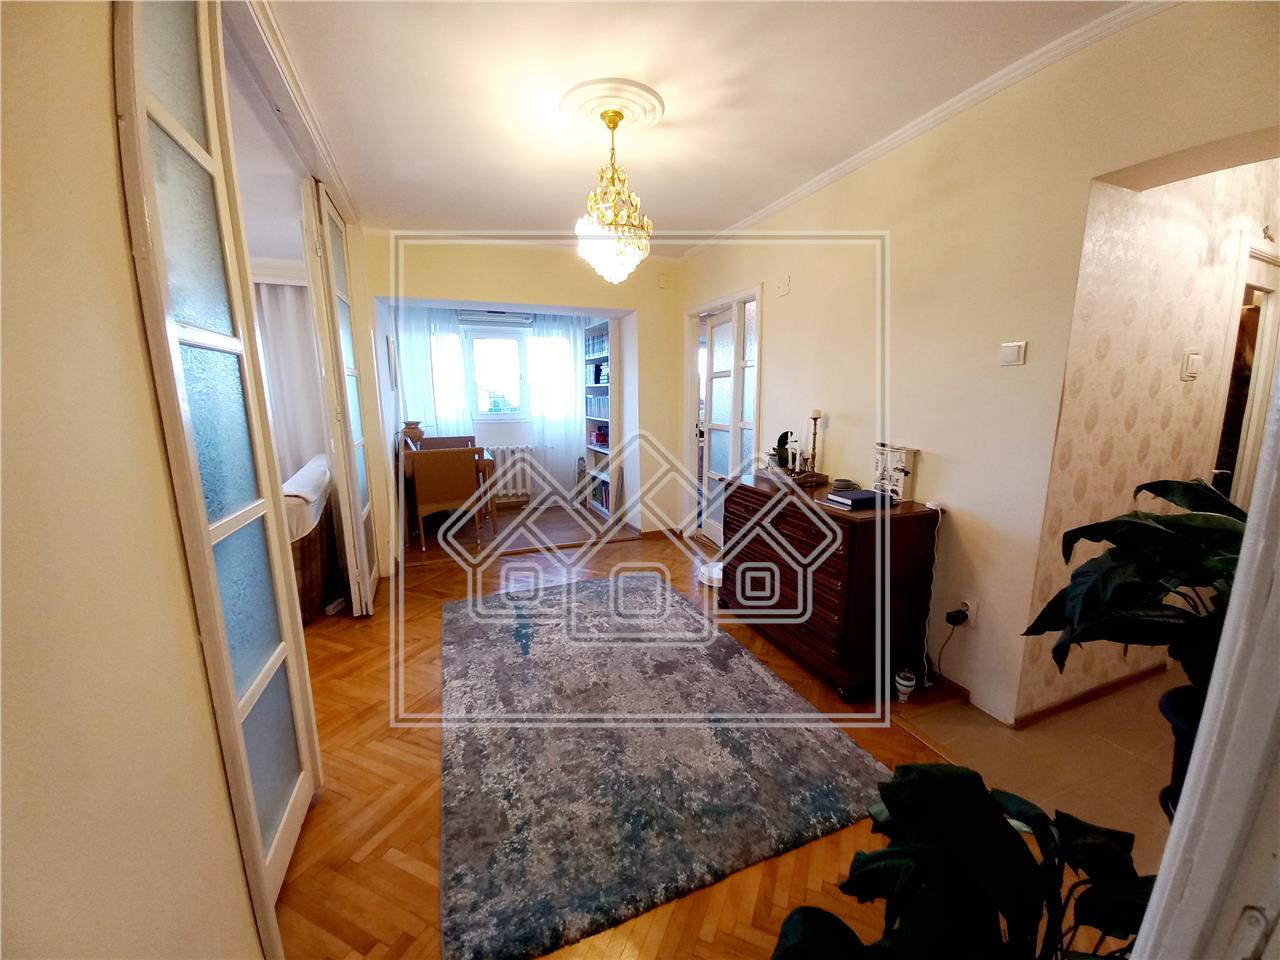 Apartament de vanzare in Alba Iulia - 3 camere - zona centrala